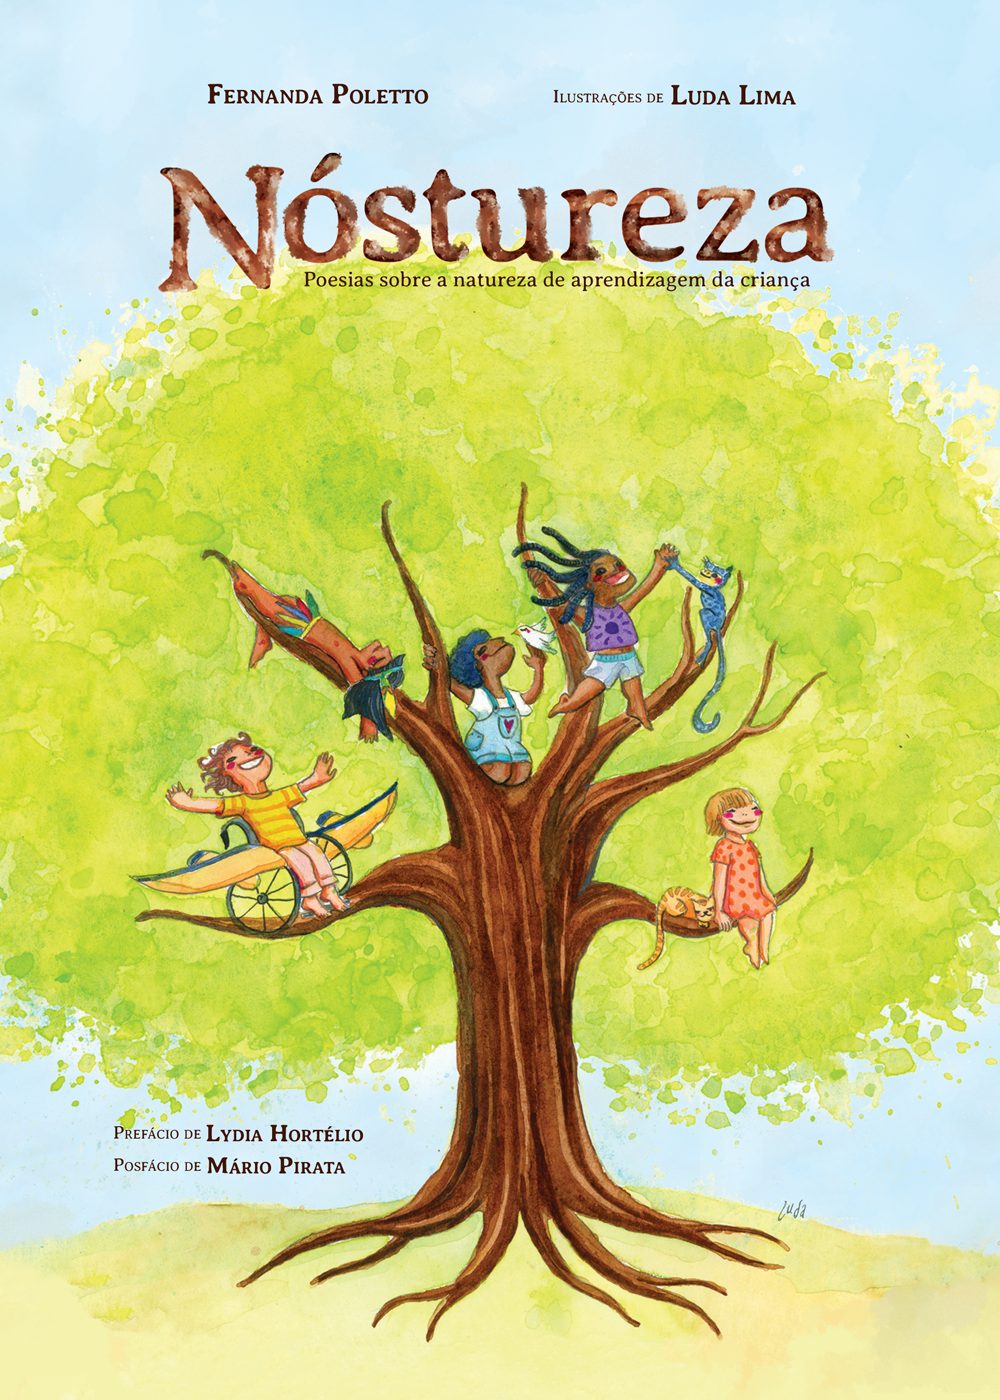 Capa do livro "Nóstureza", de Fernanda Poletto. Há crianças e animais nos galhos de uma árvore